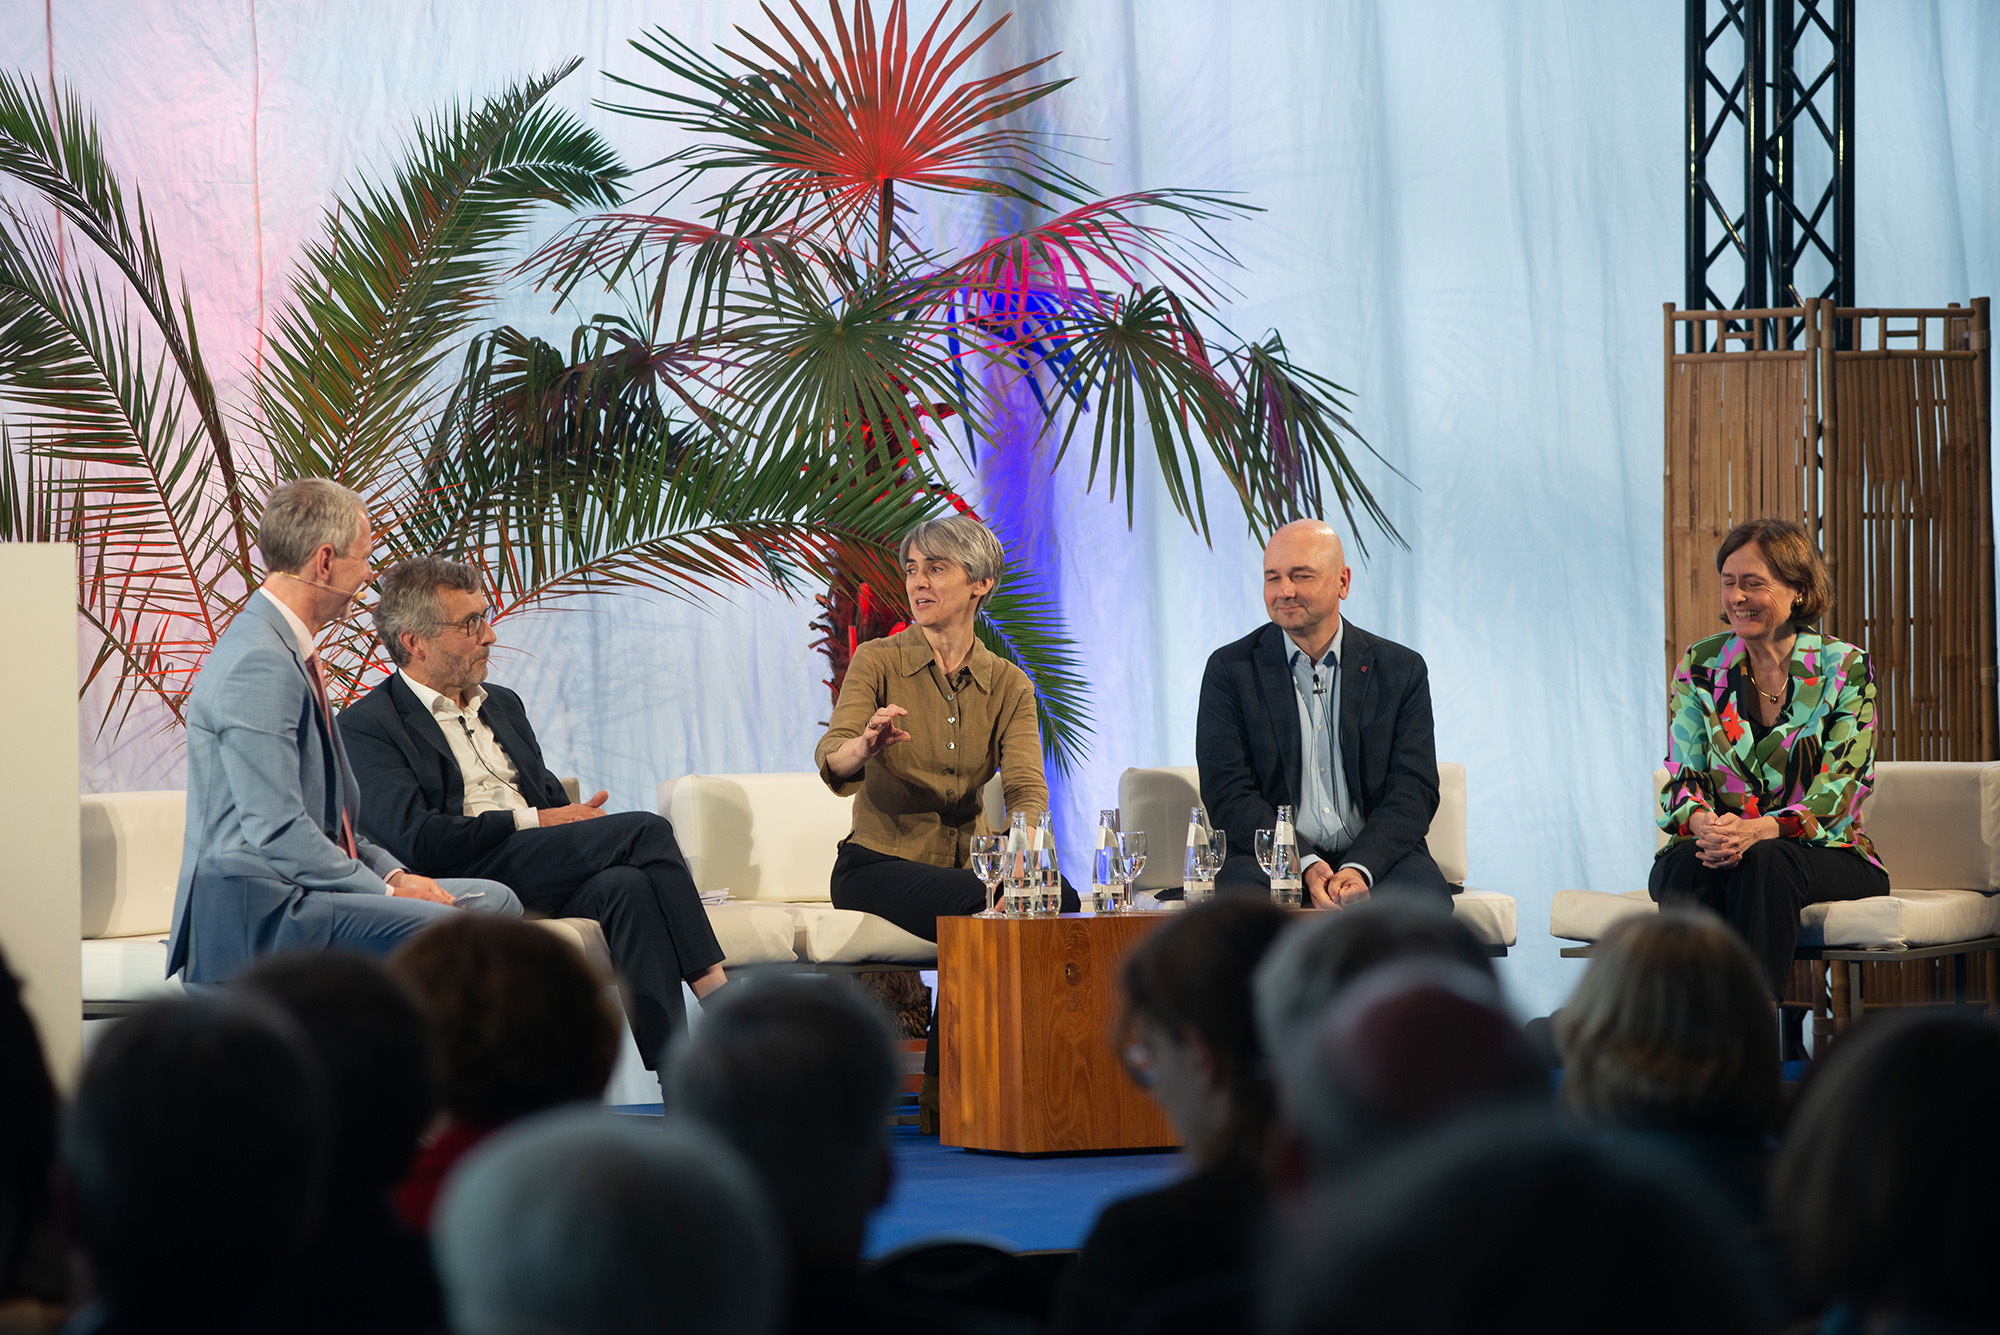 Fünf Panelisten und der Moderator (l.) auf der Bühne in der Orangerie der Biosphäre